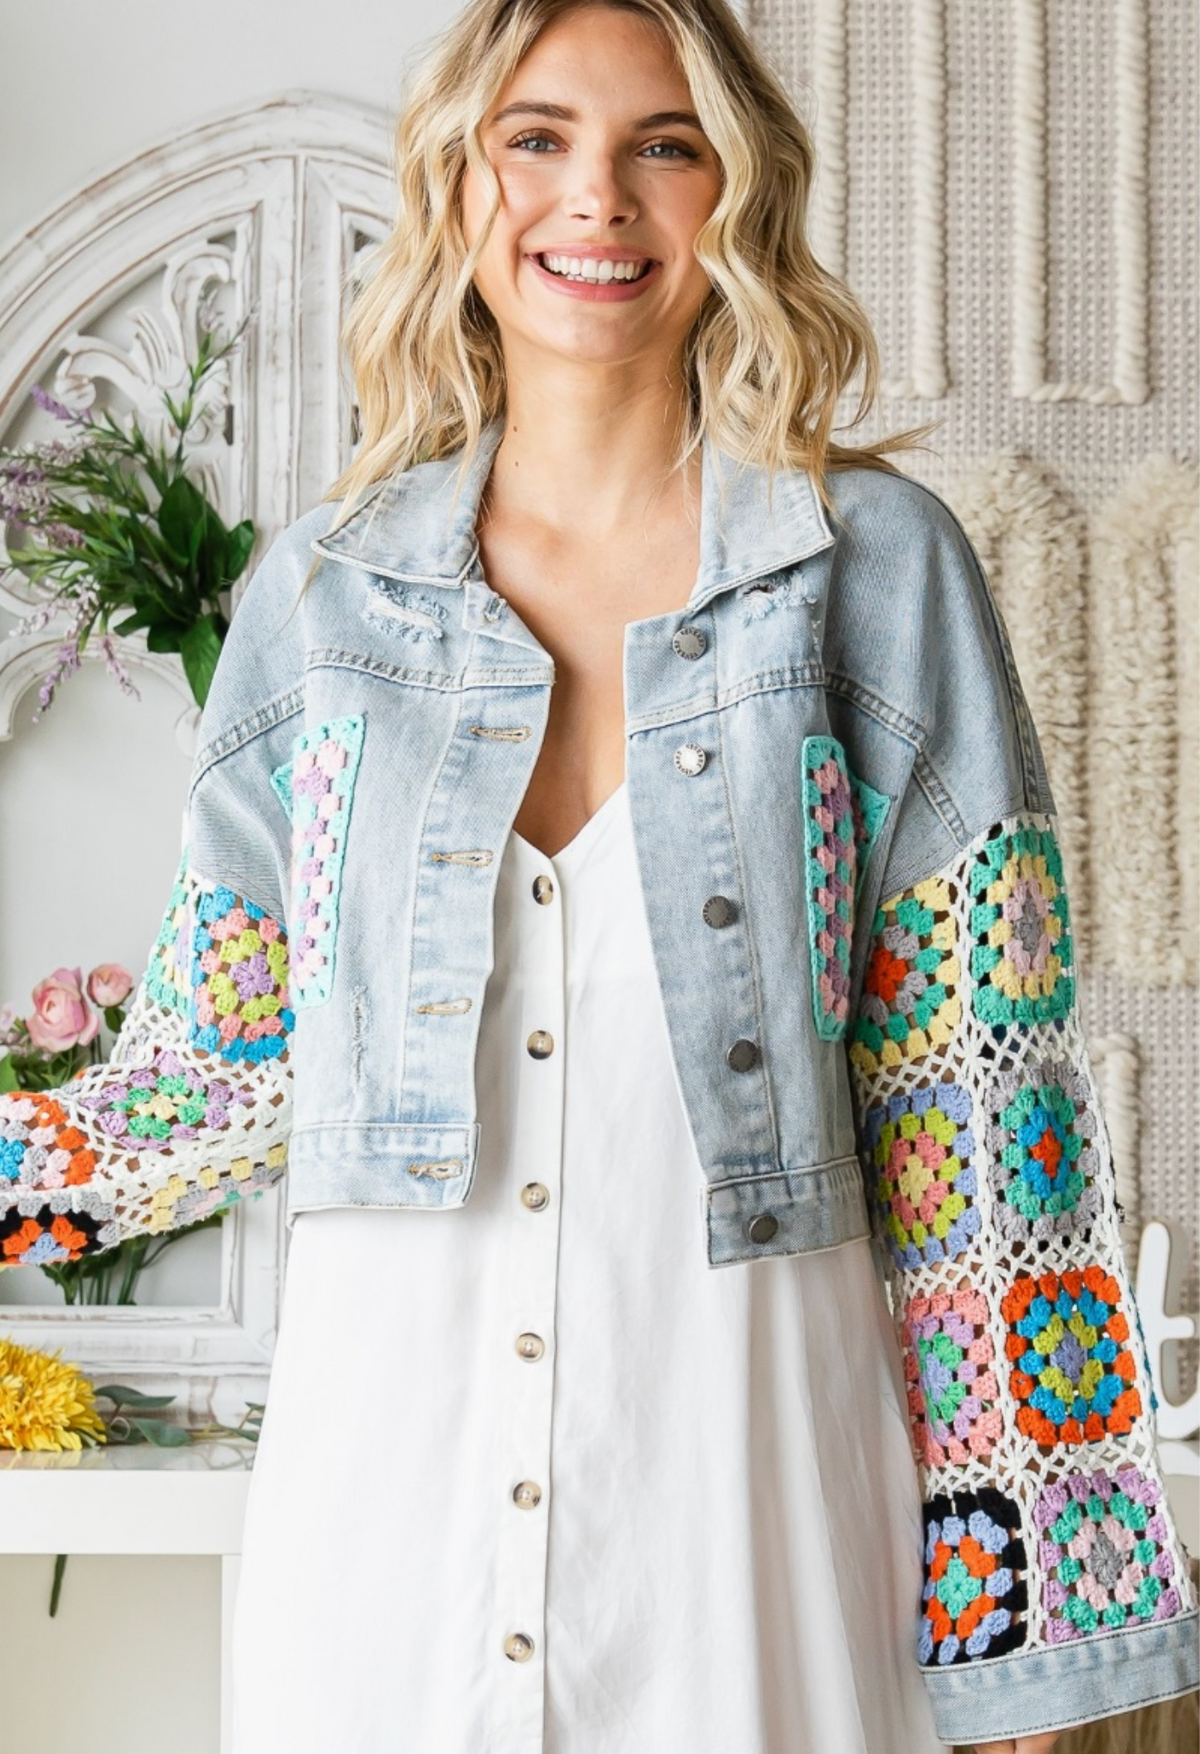 LoLa Crochet Sleeve Jacket | Arrival 4/19 - Cinderella Ranch Boutique